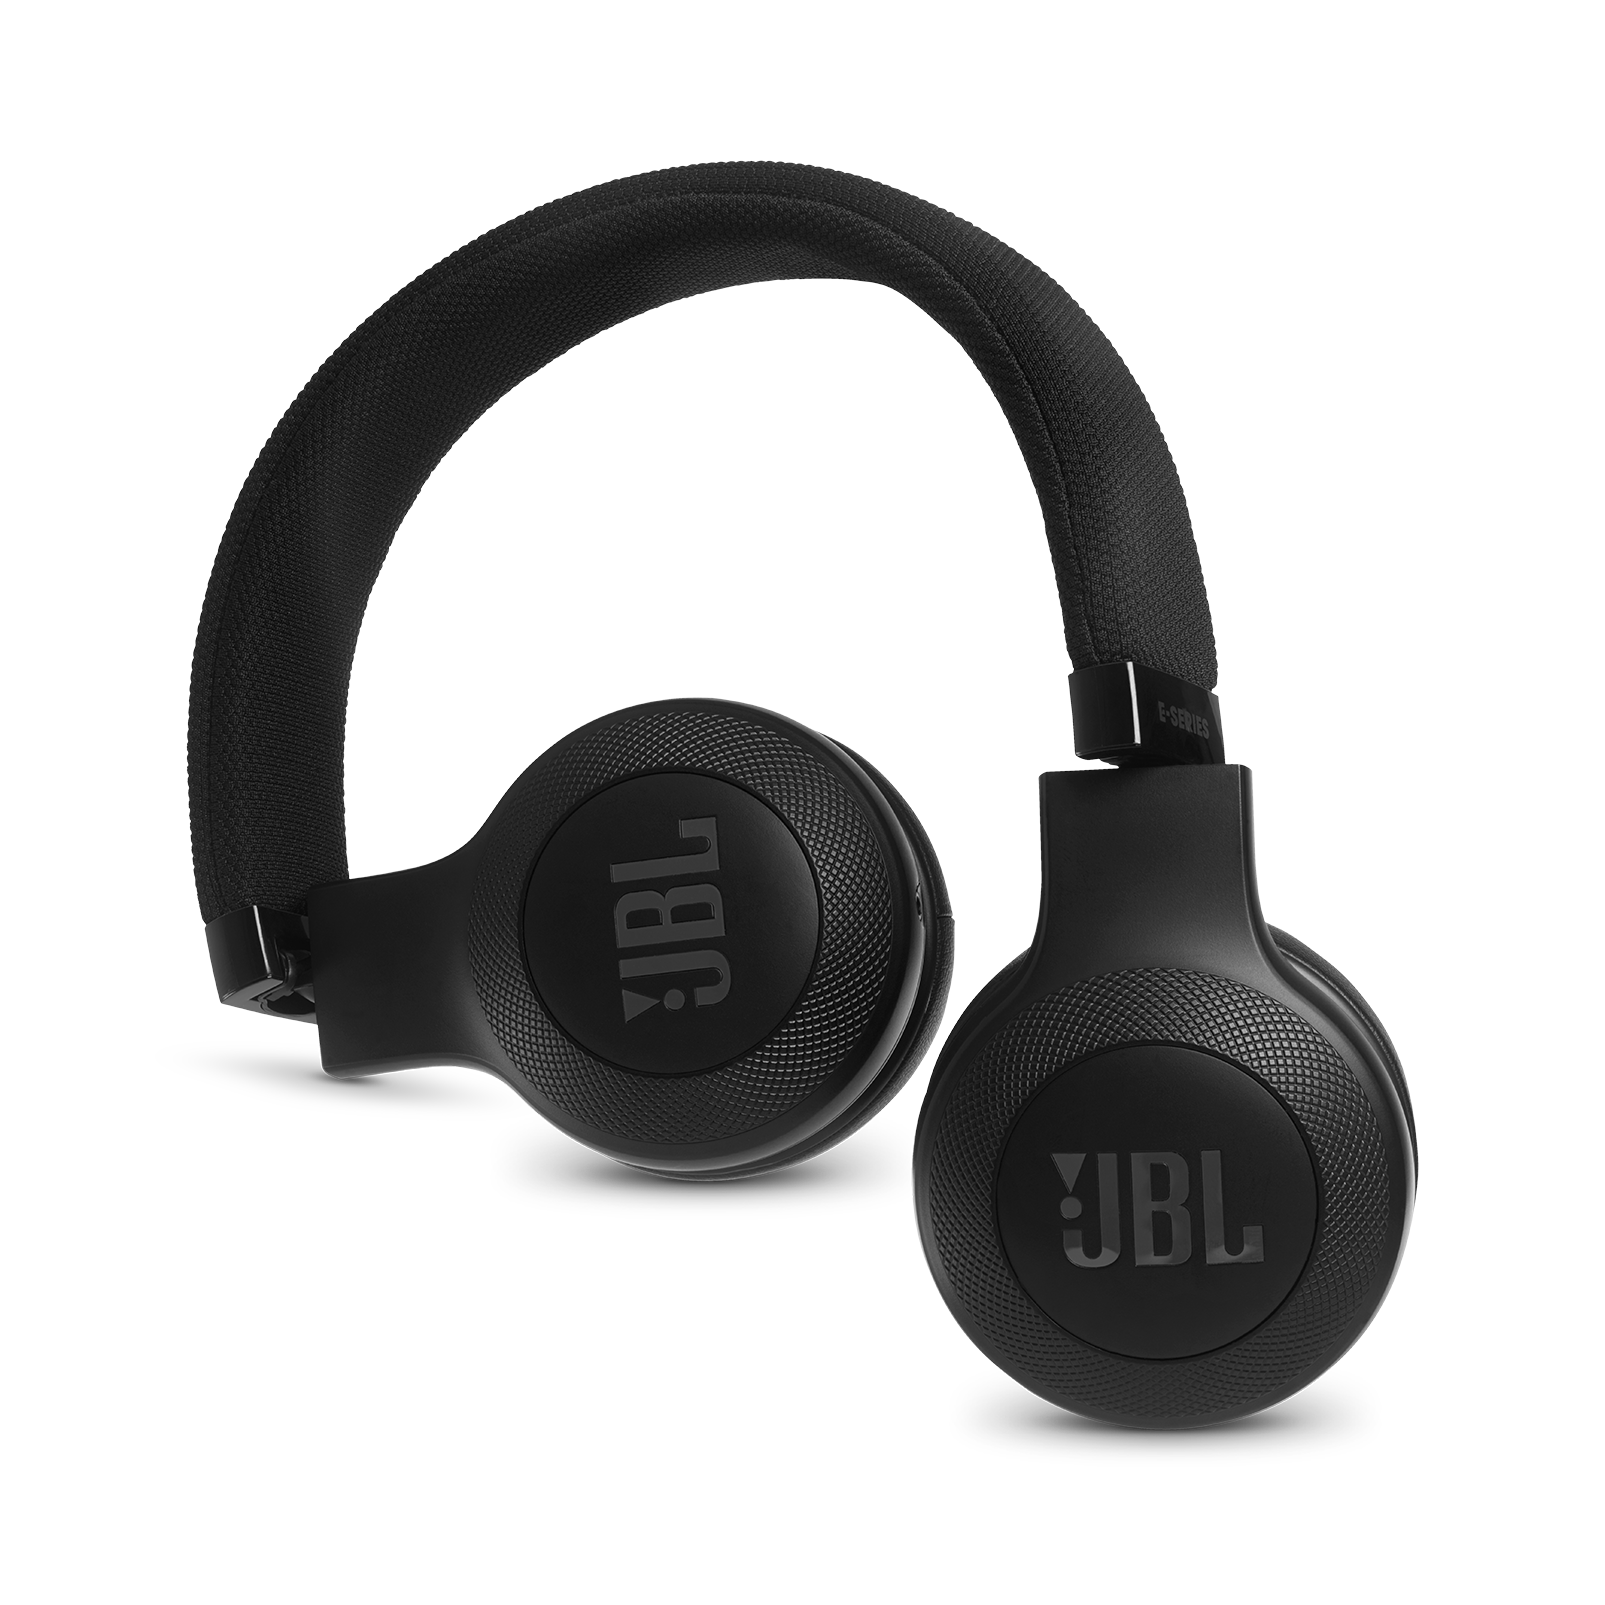 E35 - Black - On-ear headphones - Detailshot 1